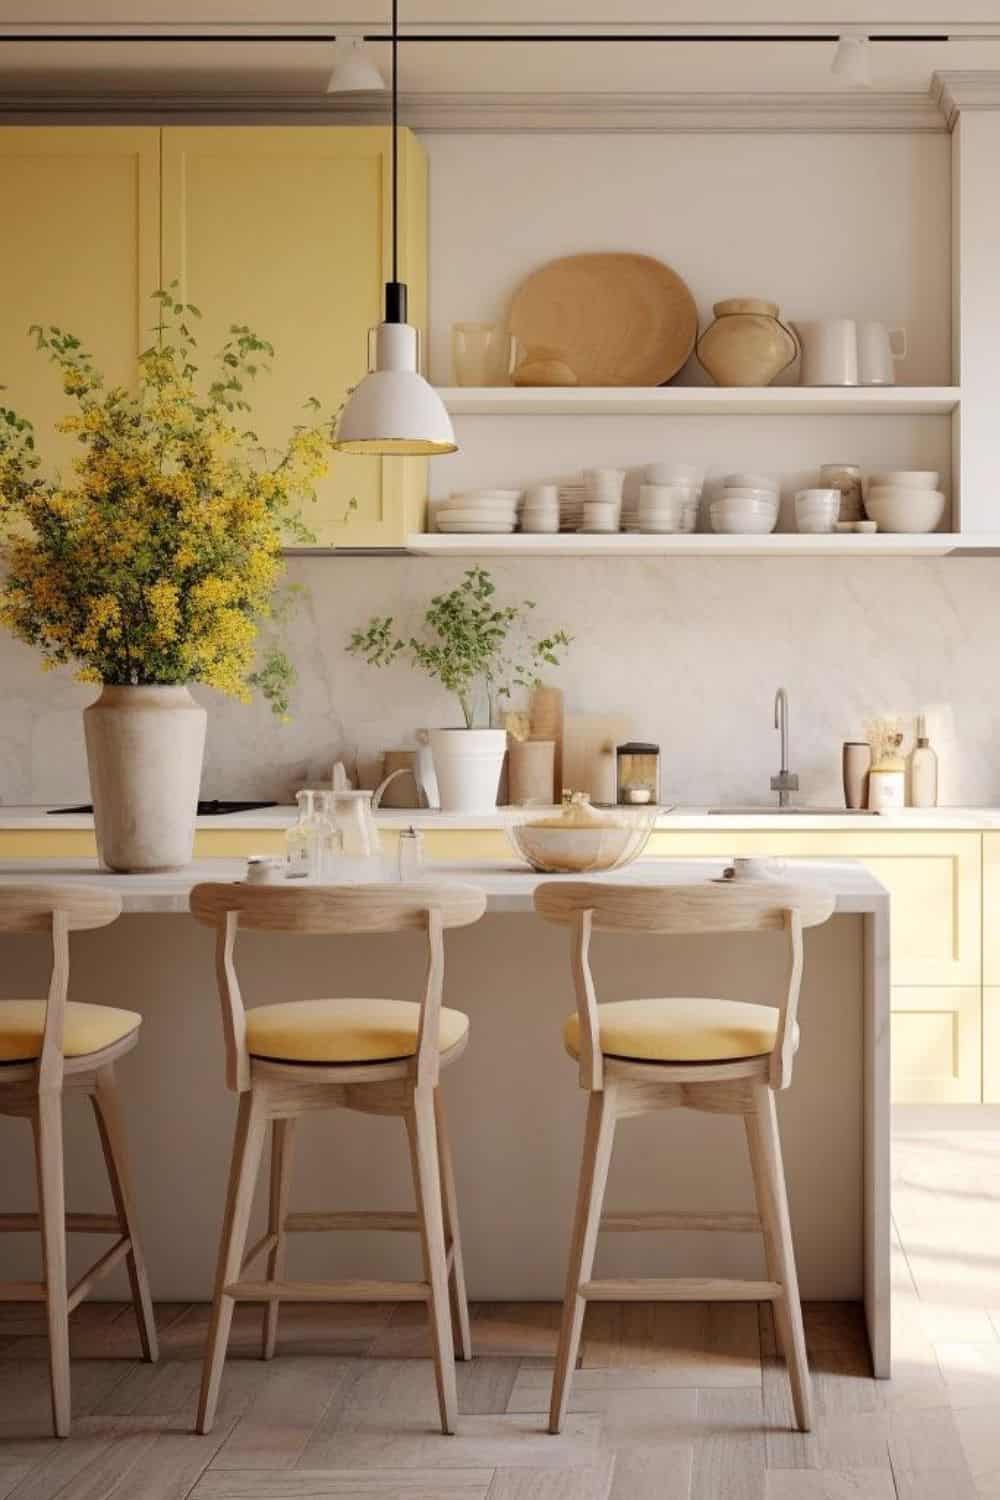 soft yellow and cream kitchen 